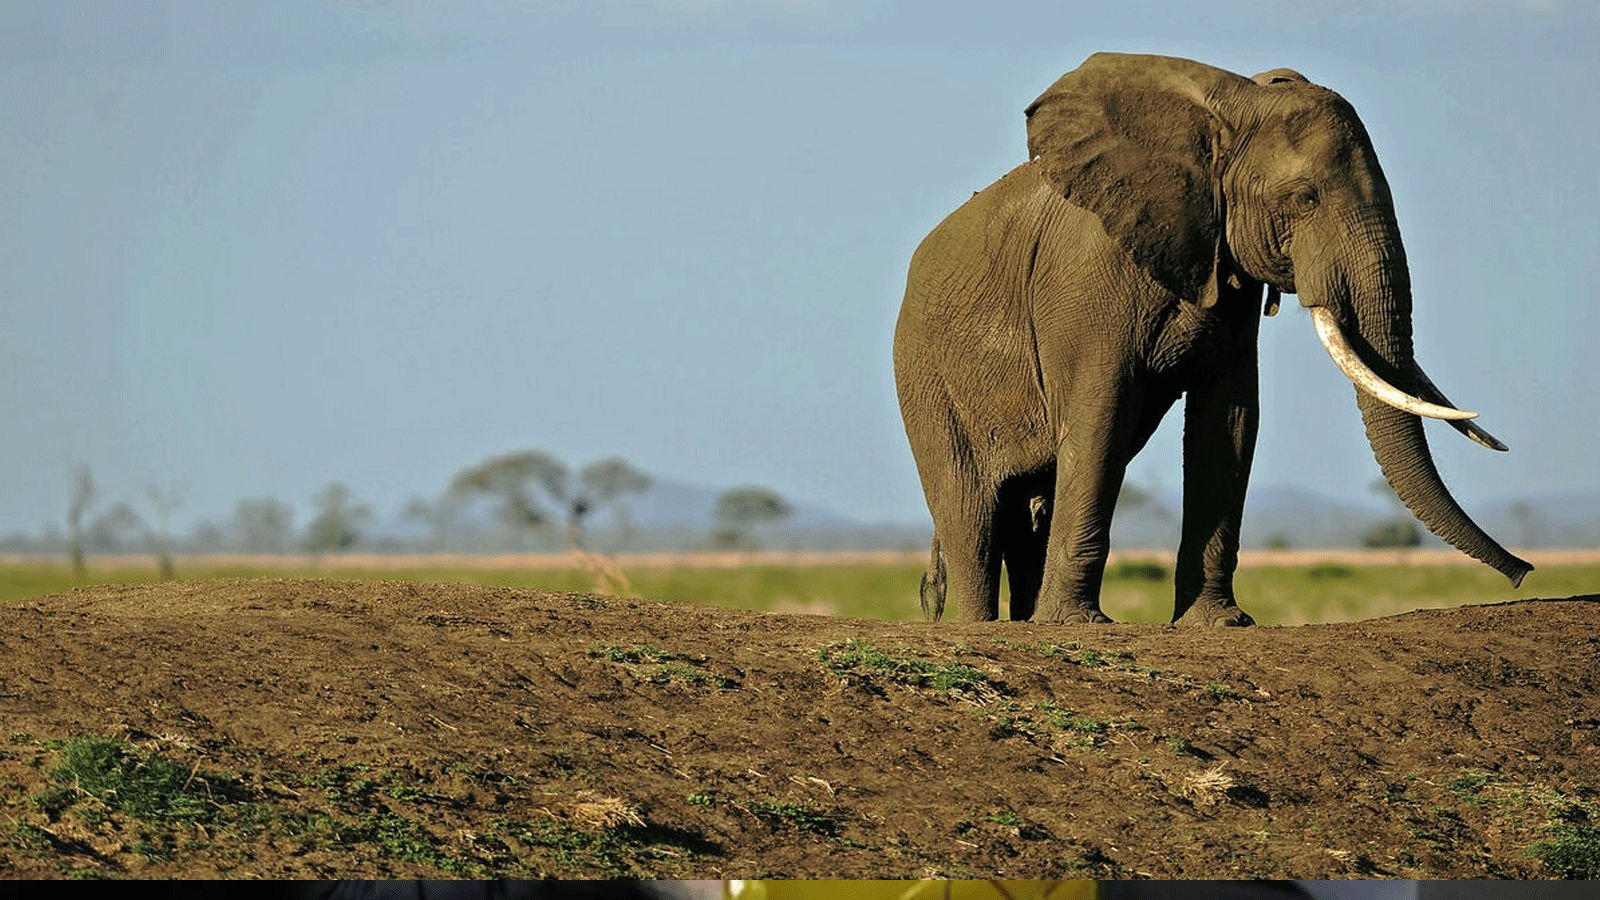 تنزانيا تشتهر بالحياة البرية المتنوعة وتواجد الفيلة